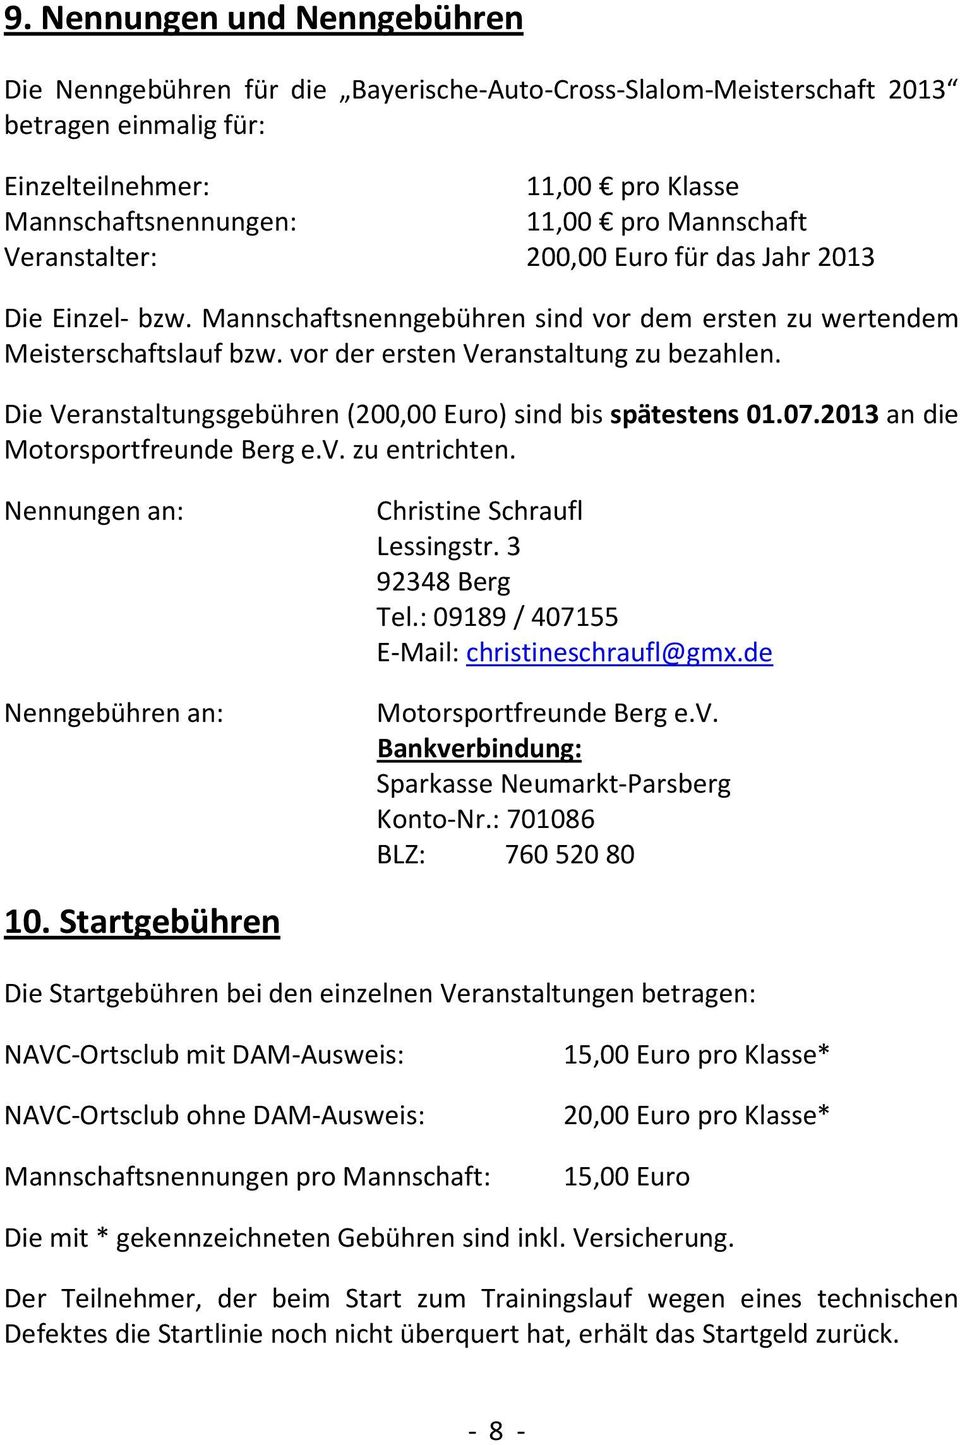 Die Veranstaltungsgebühren (200,00 Euro) sind bis spätestens 01.07.2013 an die Motorsportfreunde Berg e.v. zu entrichten. Nennungen an: Nenngebühren an: Christine Schraufl Lessingstr.